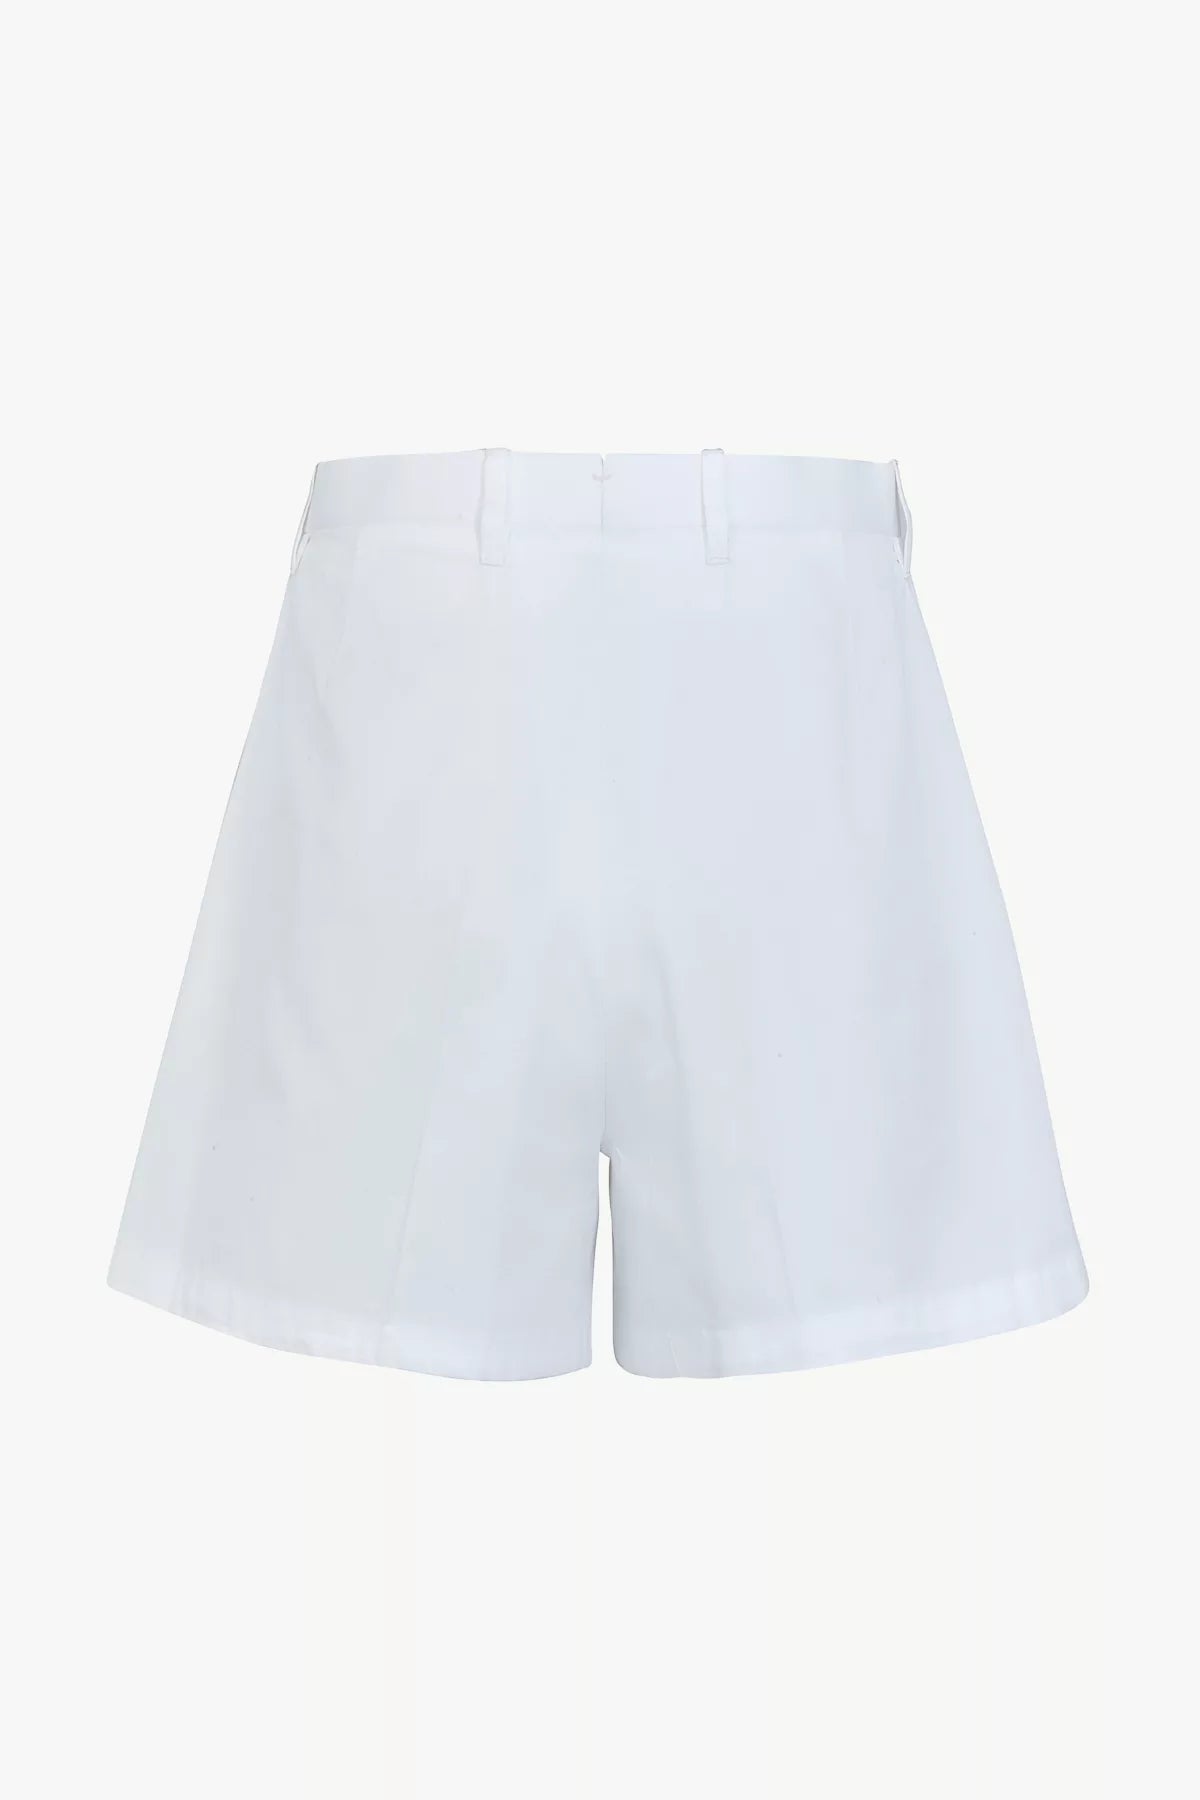 Giuliva-Heritage-The-Nina-Shorts_Cotton-Twill-Optical-White-Amarees